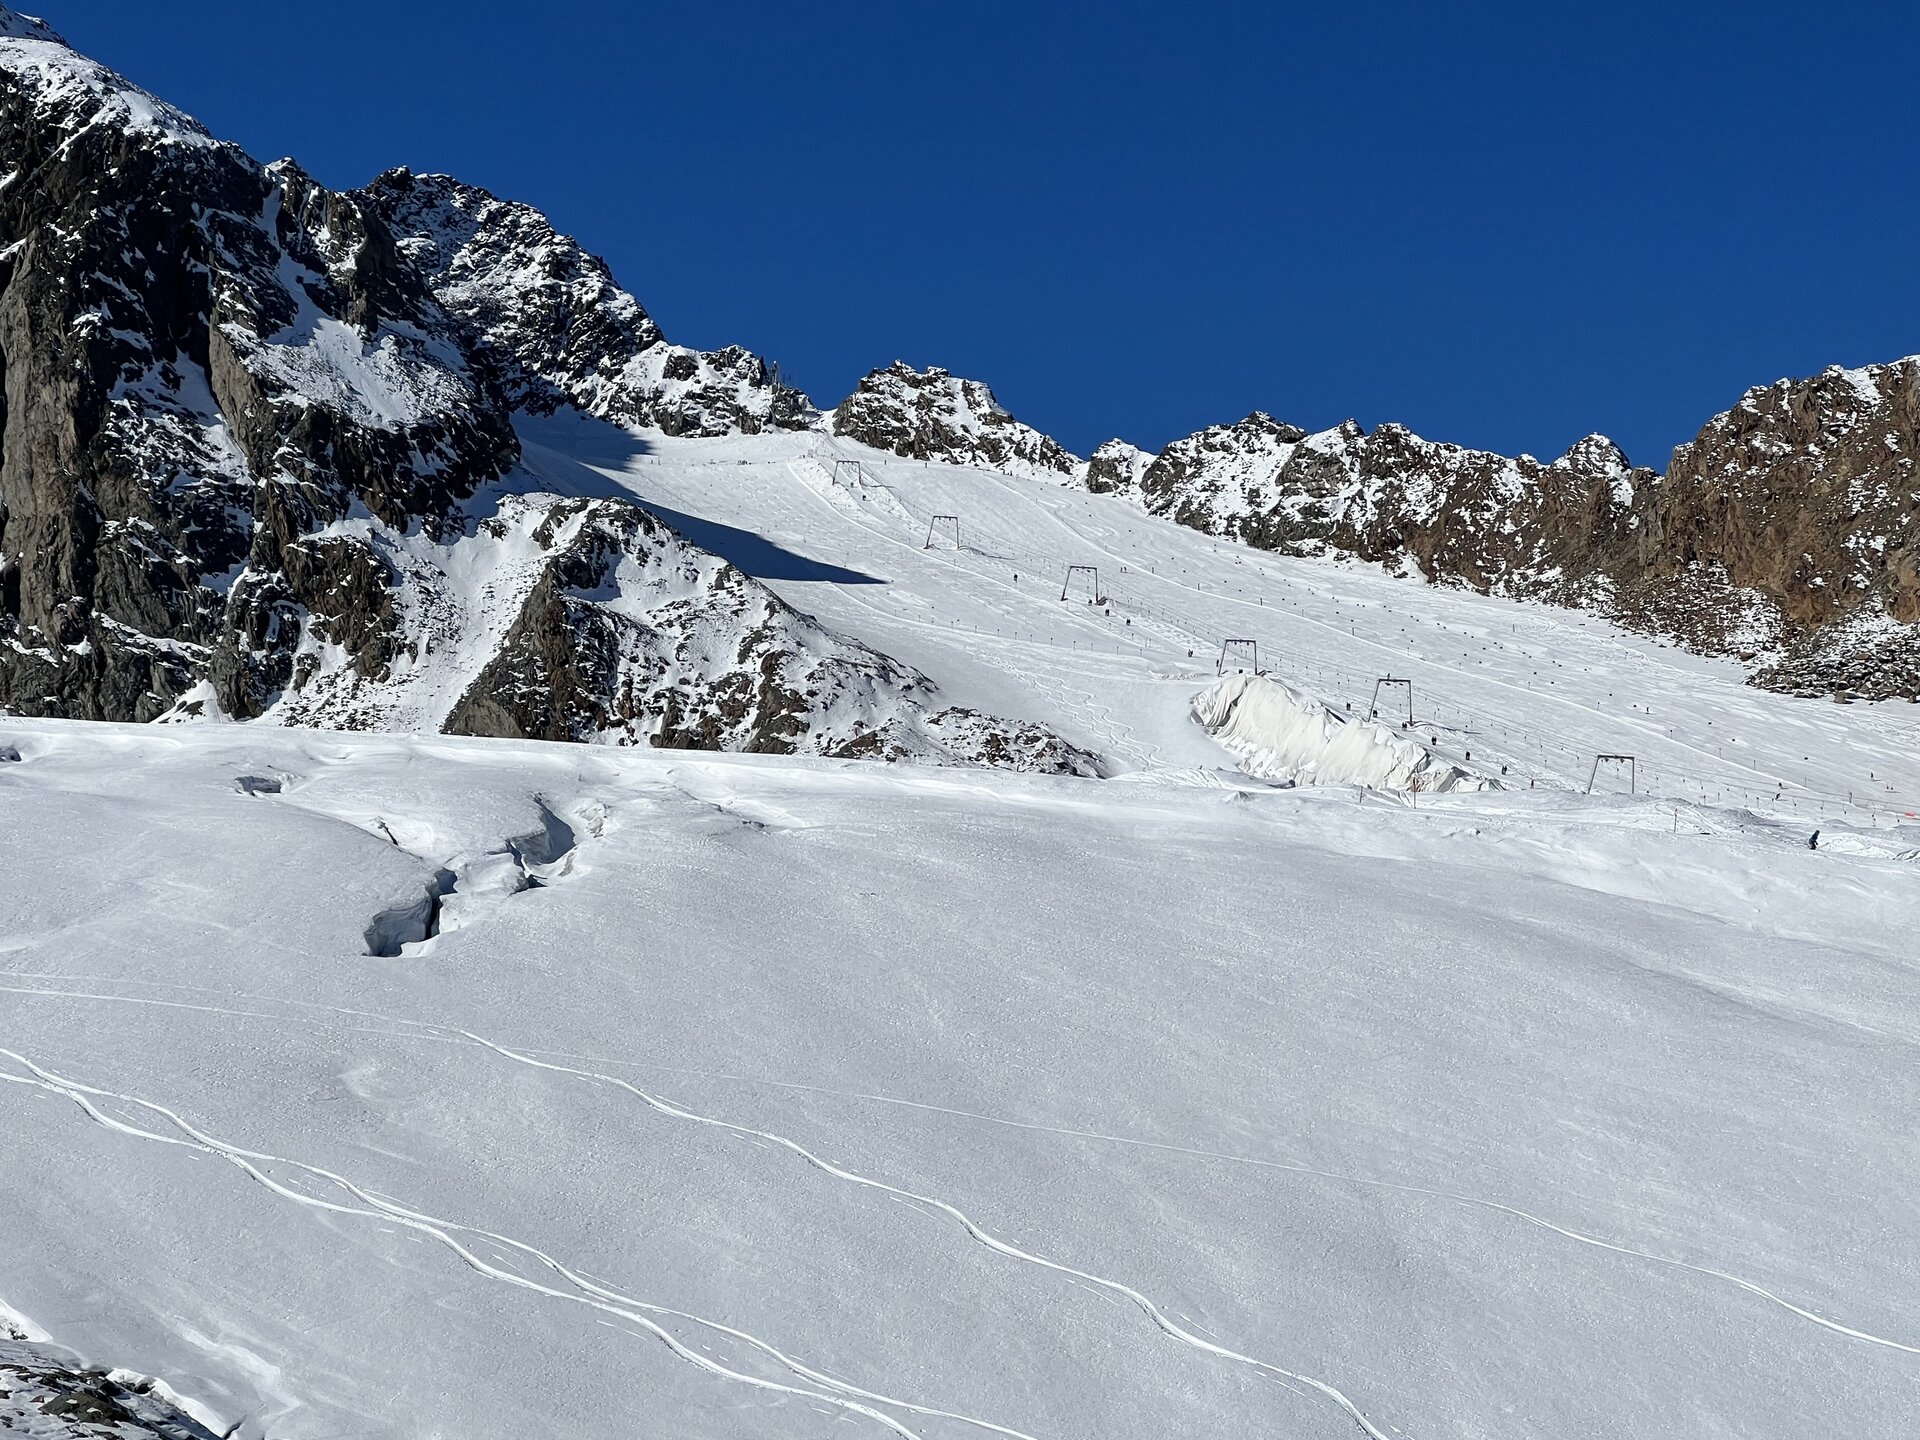 Lodowiec Pitztal - najwyższy, narciarski lodowiec Austrii